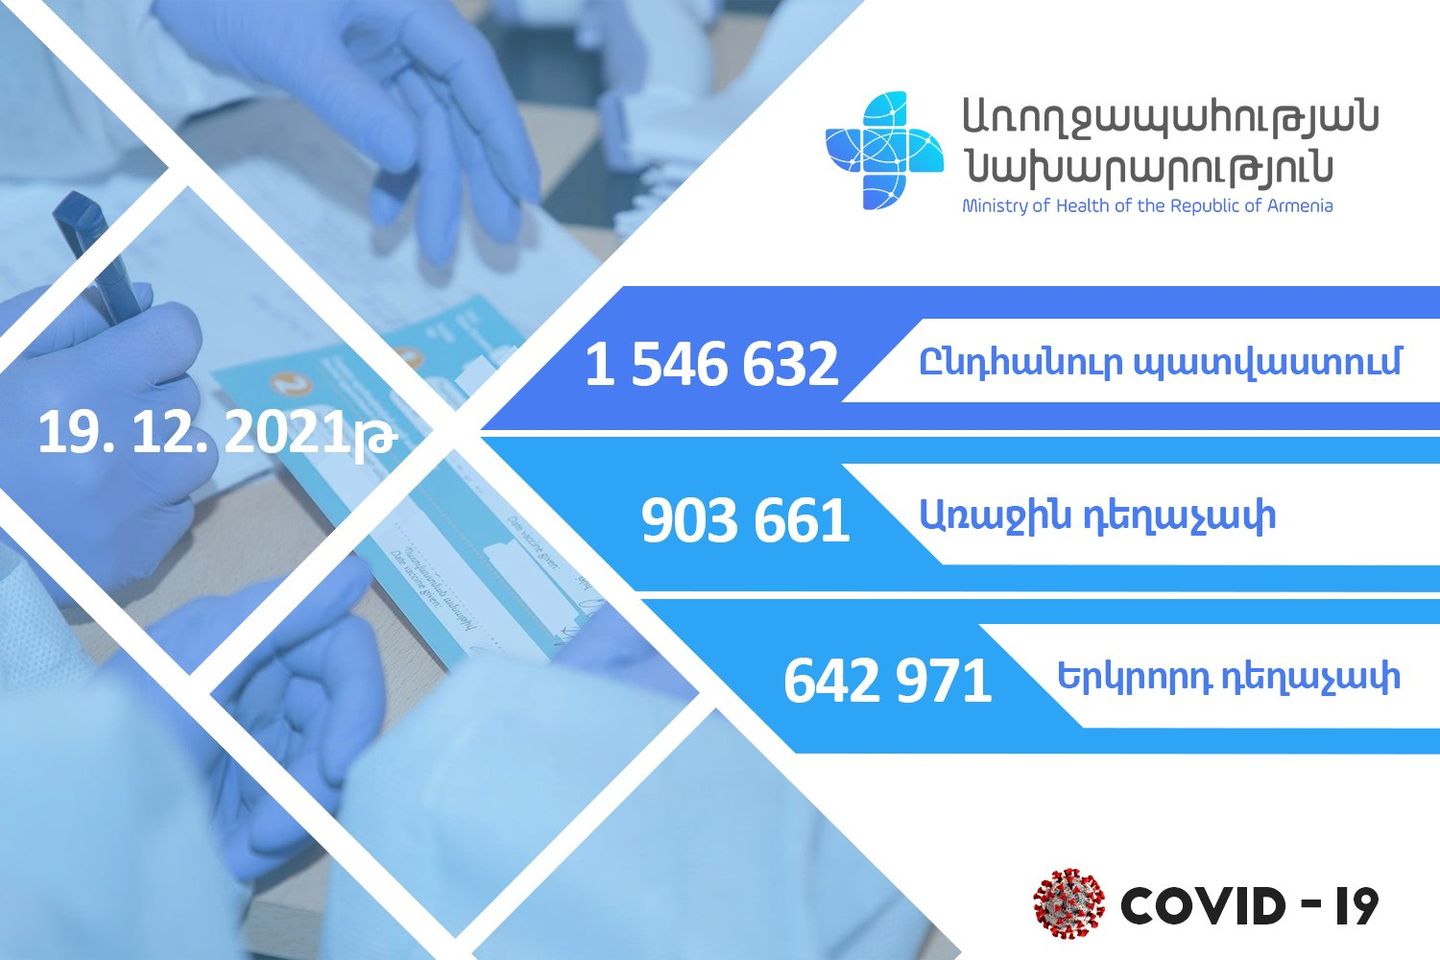 В Армении против COVID-19 осуществлена вакцинация  1 546 632 человек